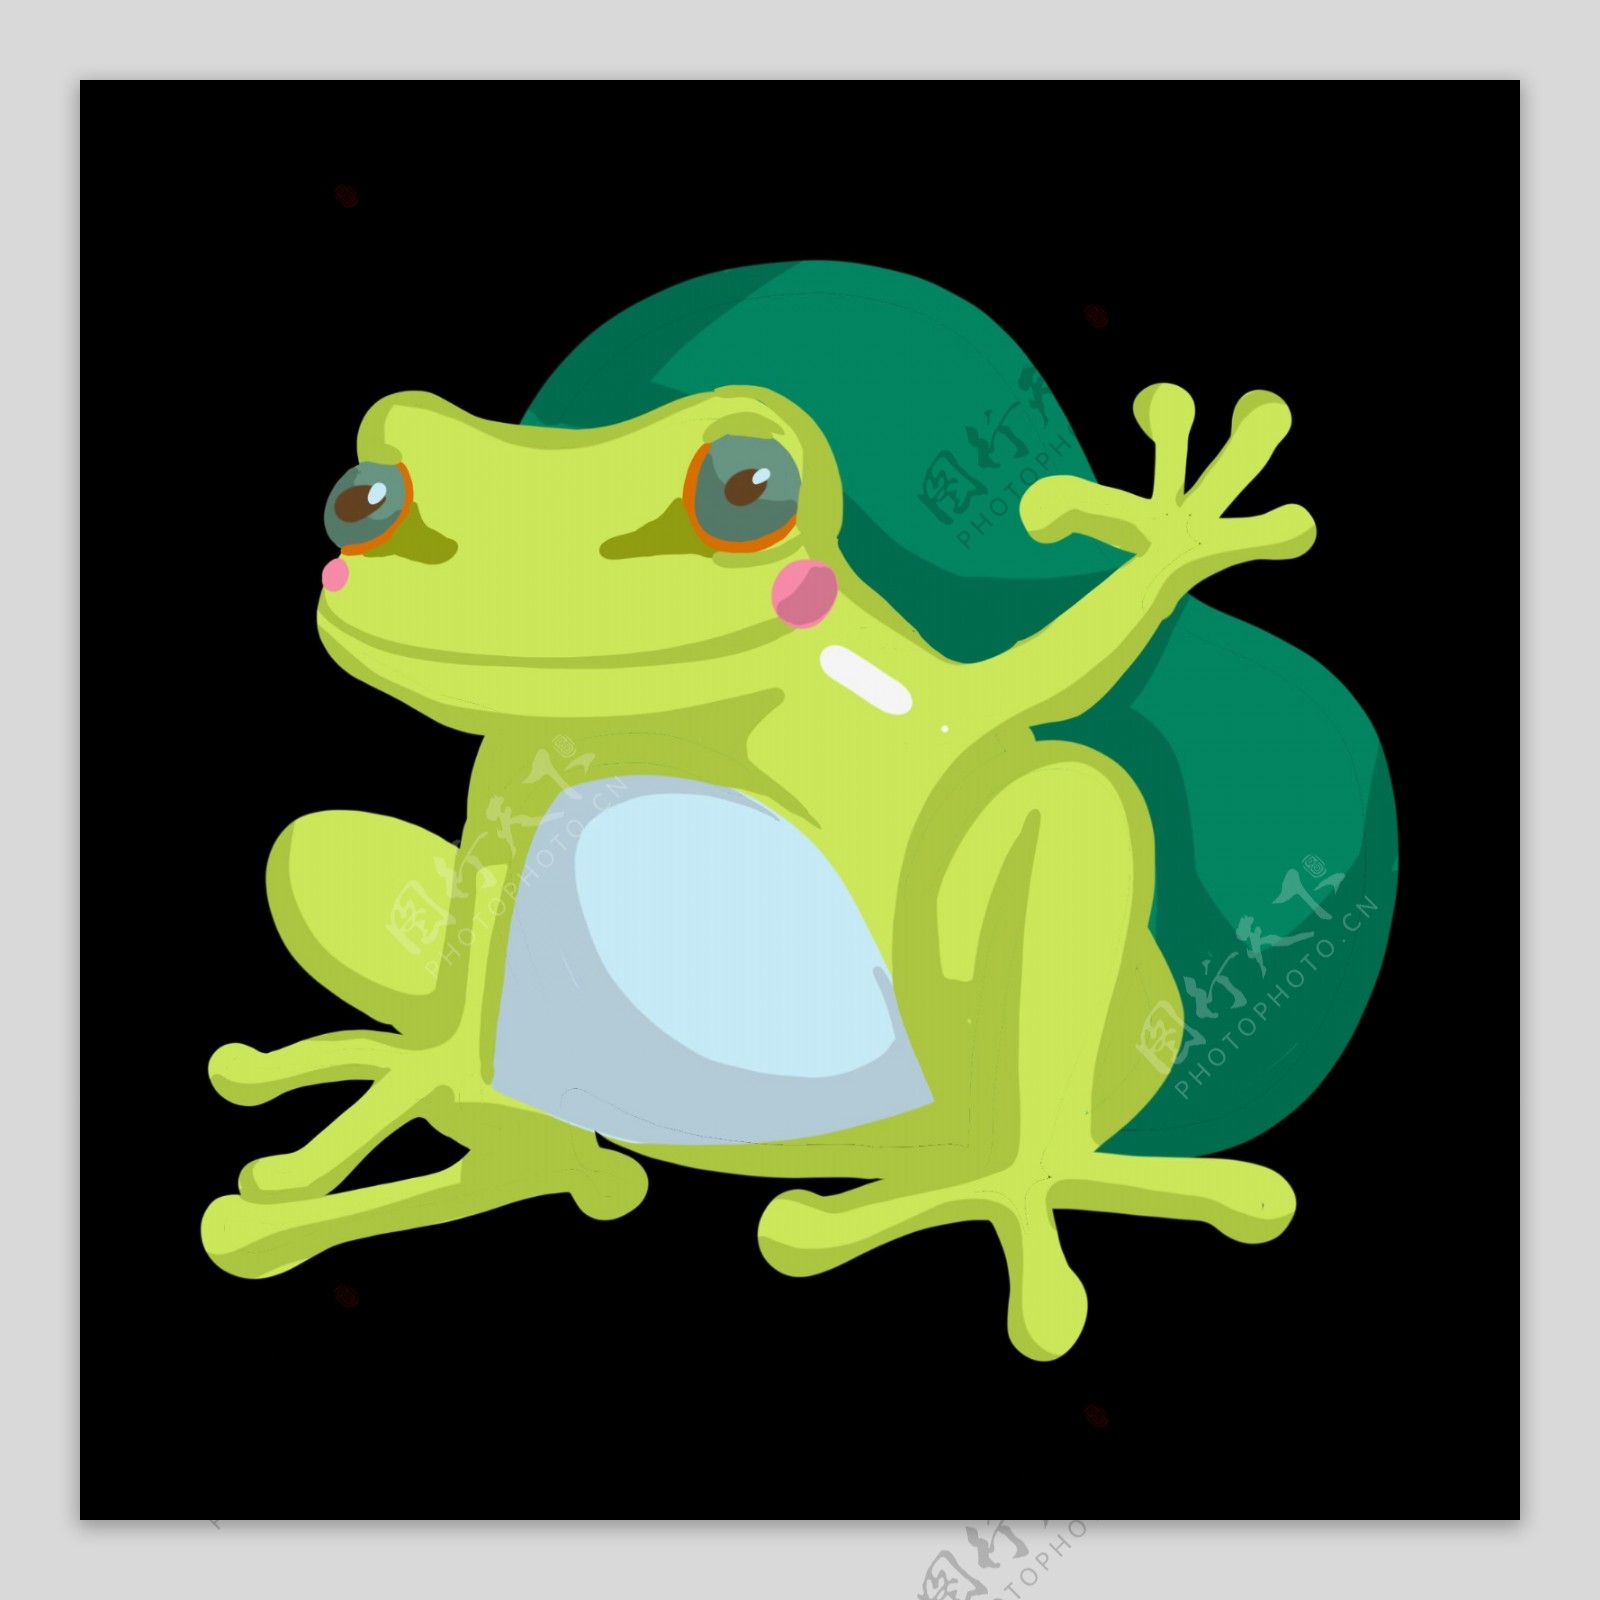 可爱的绿色青蛙